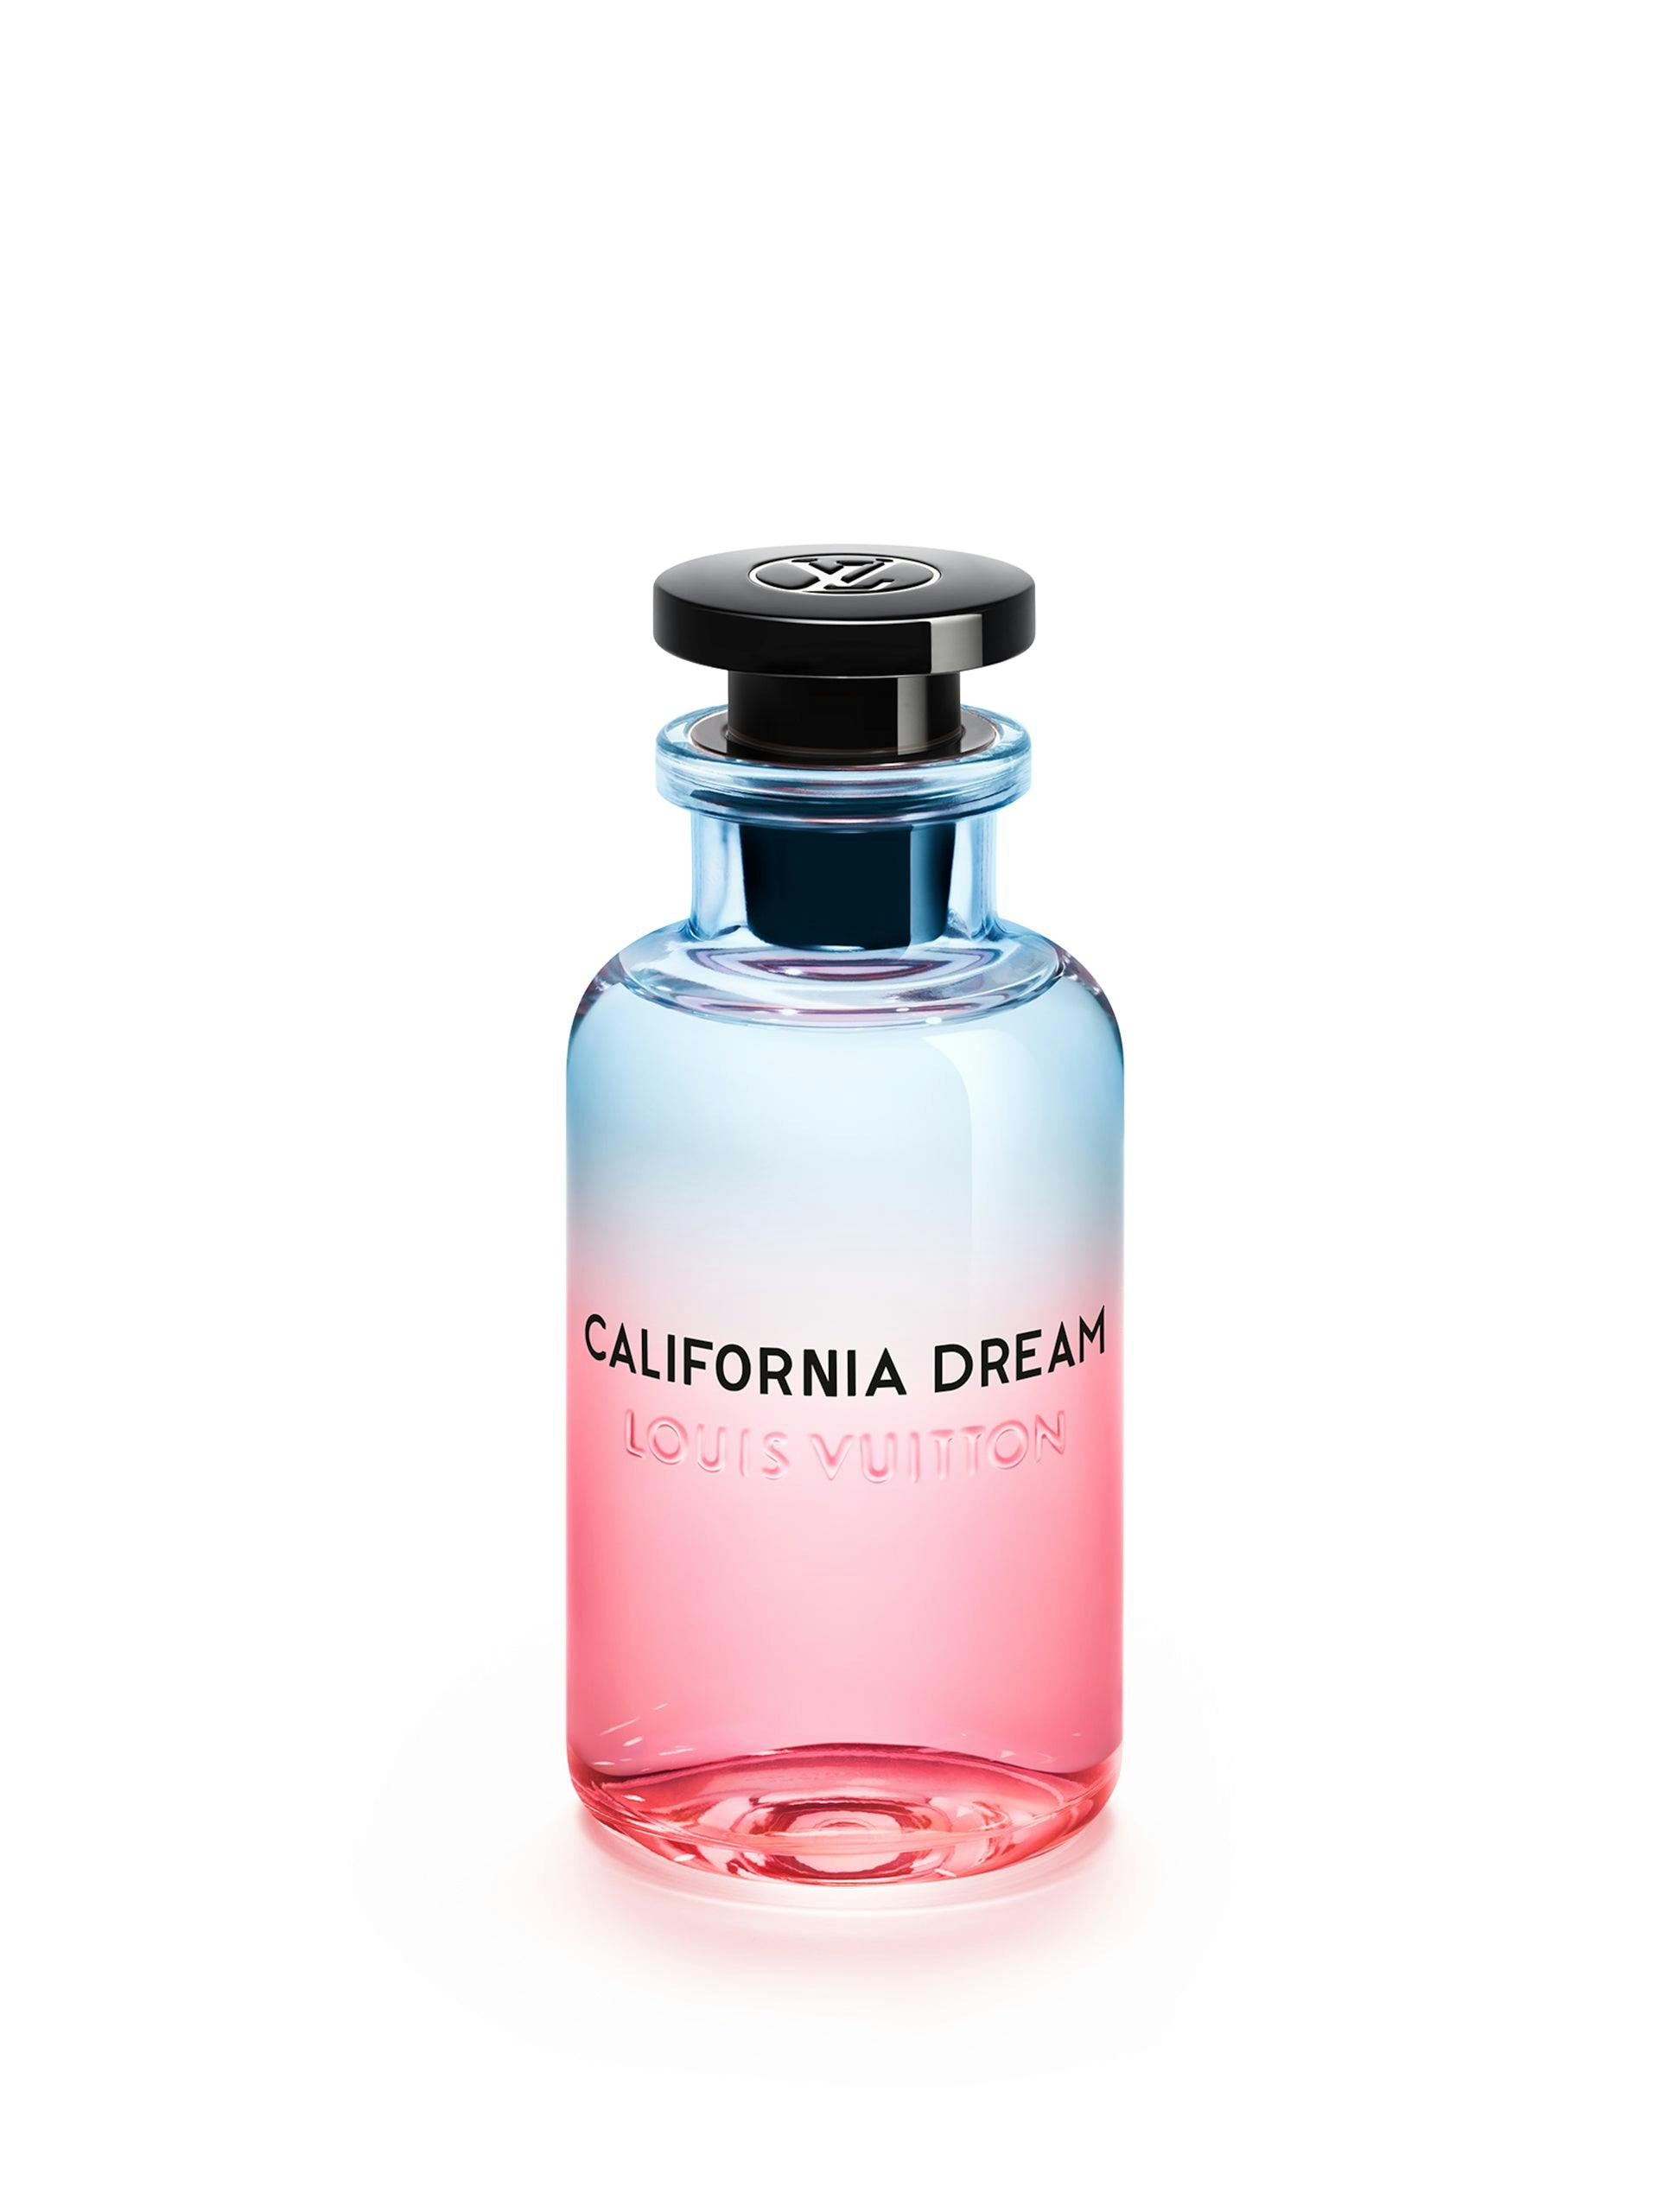 California Dream eau de parfum